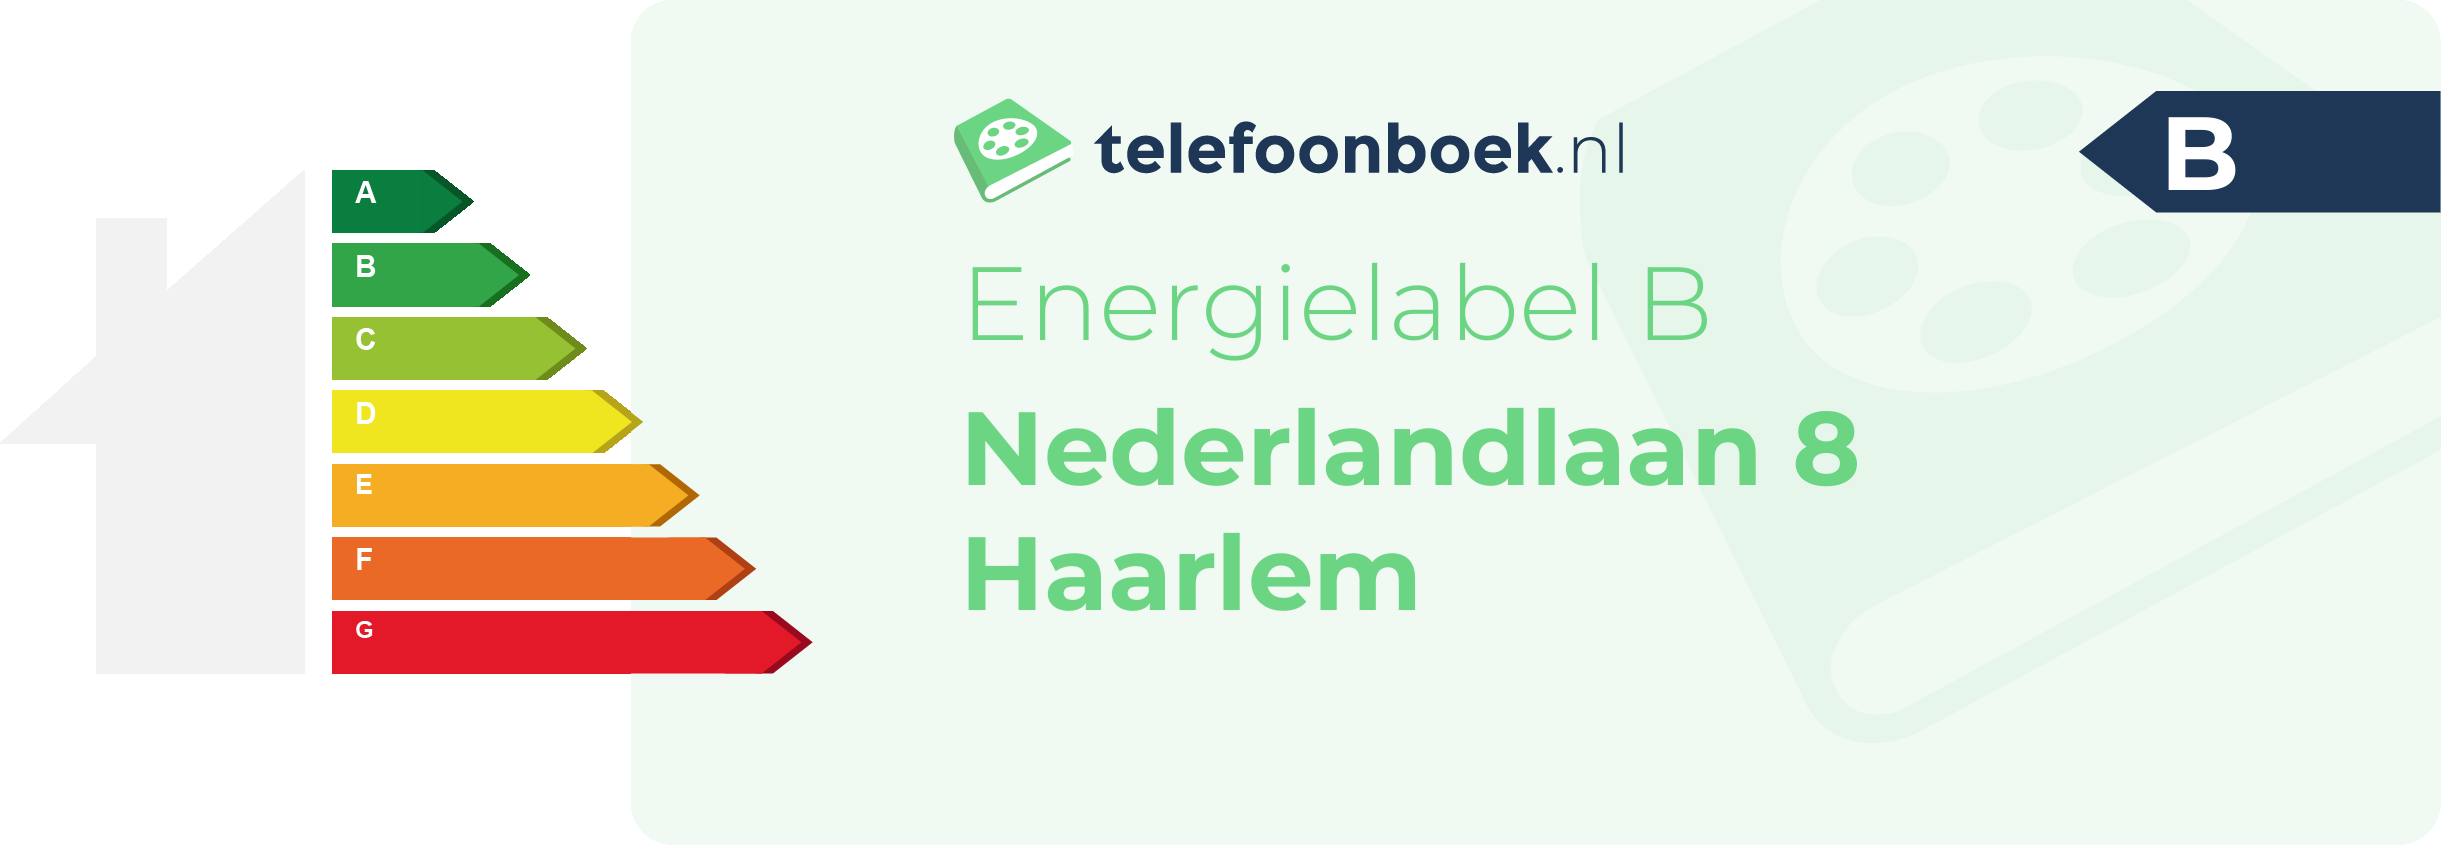 Energielabel Nederlandlaan 8 Haarlem